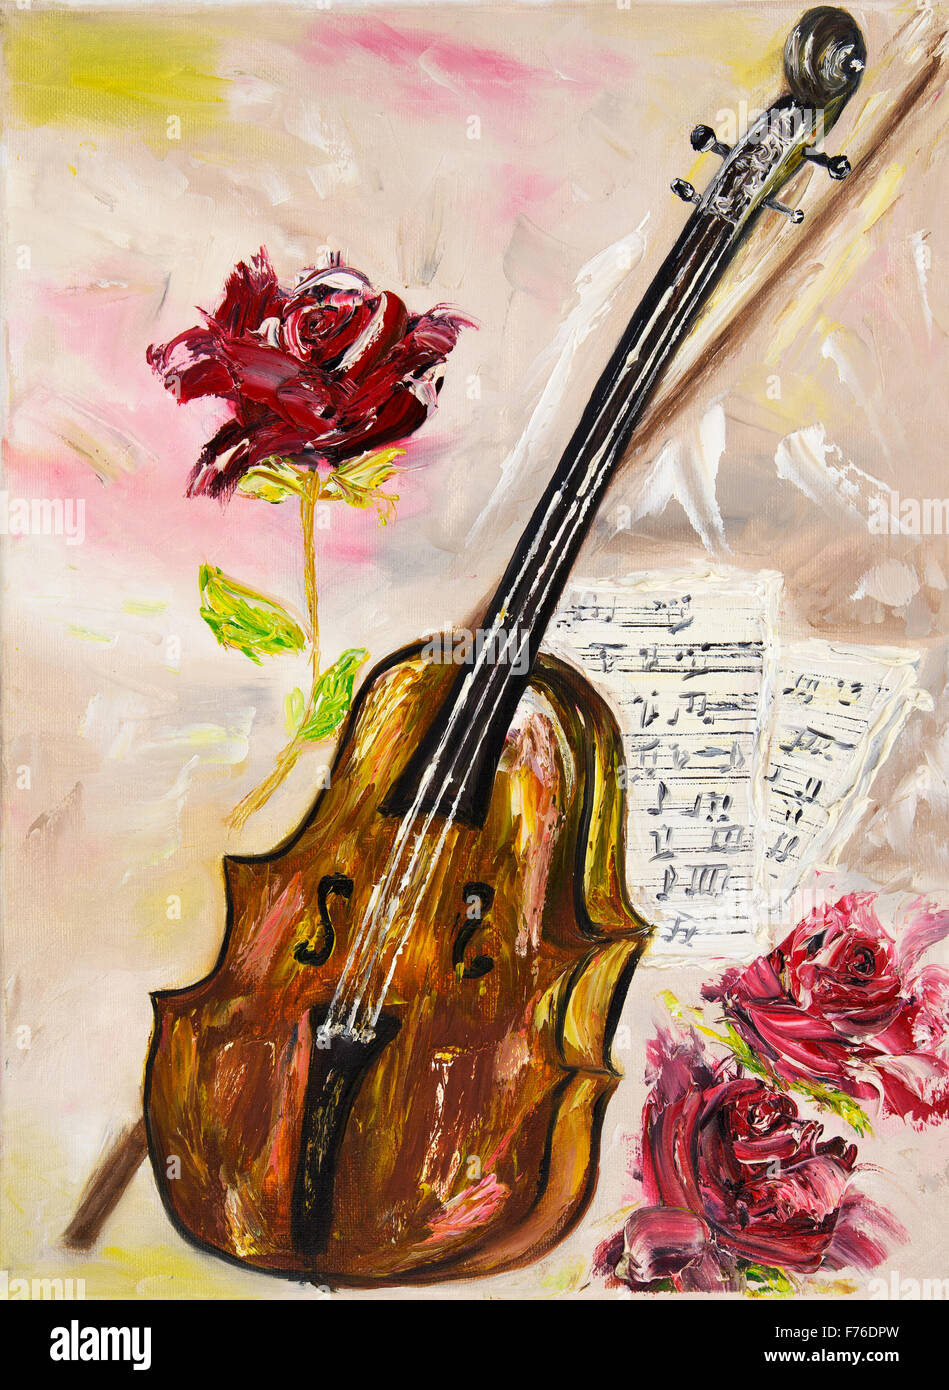 Peinture à l'huile originale montrant un violon. roses et feuilles de musique sur toile.thème musical.impressionnisme moderne, modernisme, marinis Banque D'Images